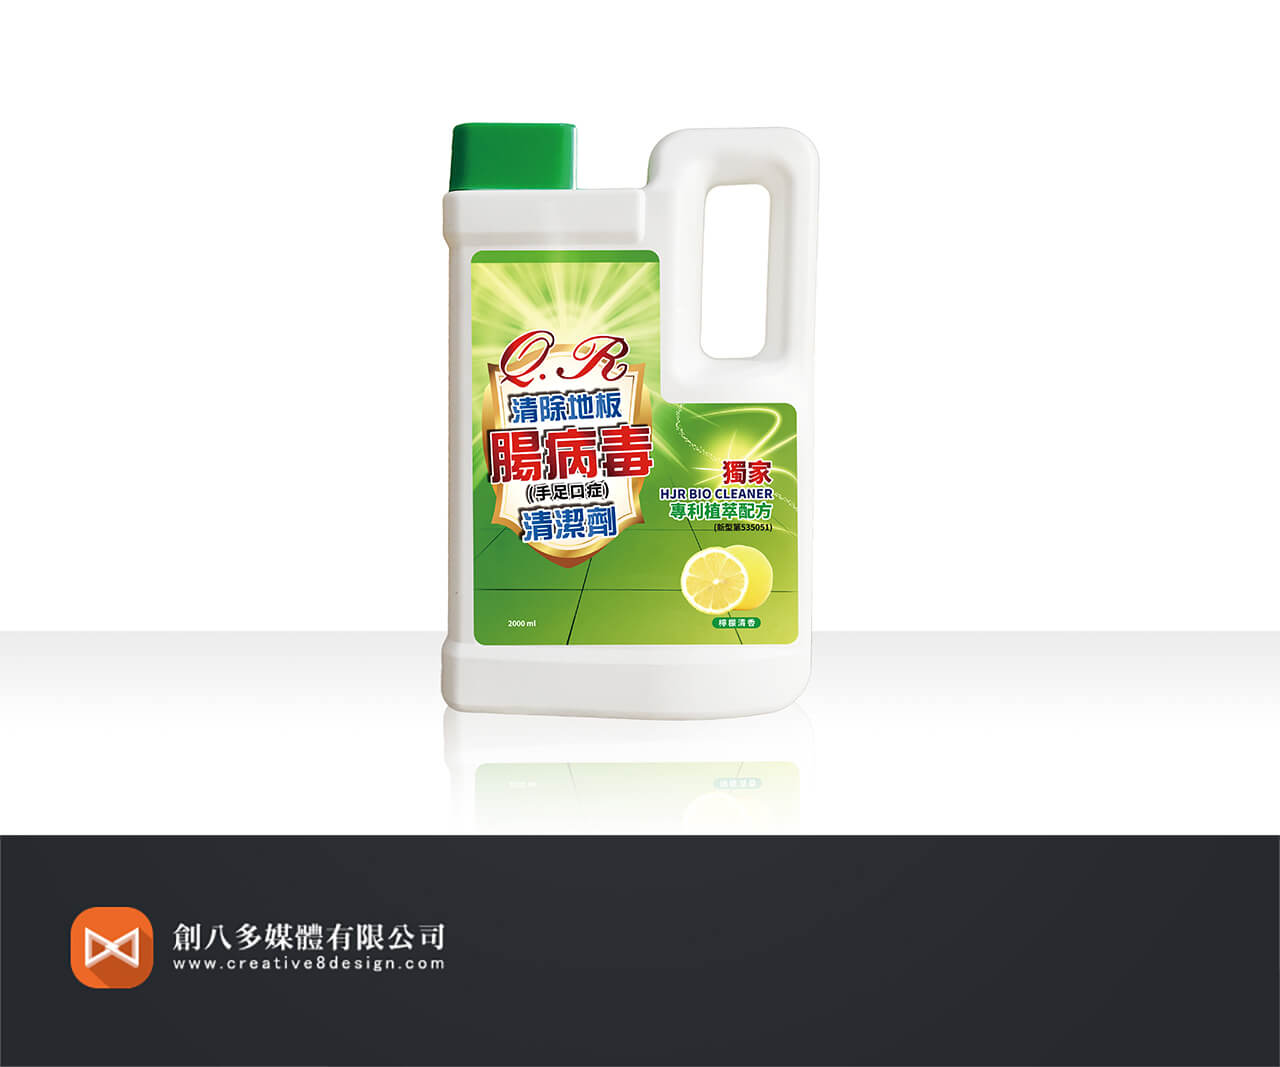 建榮生技QR清除地板腸病毒清潔劑的瓶裝設計